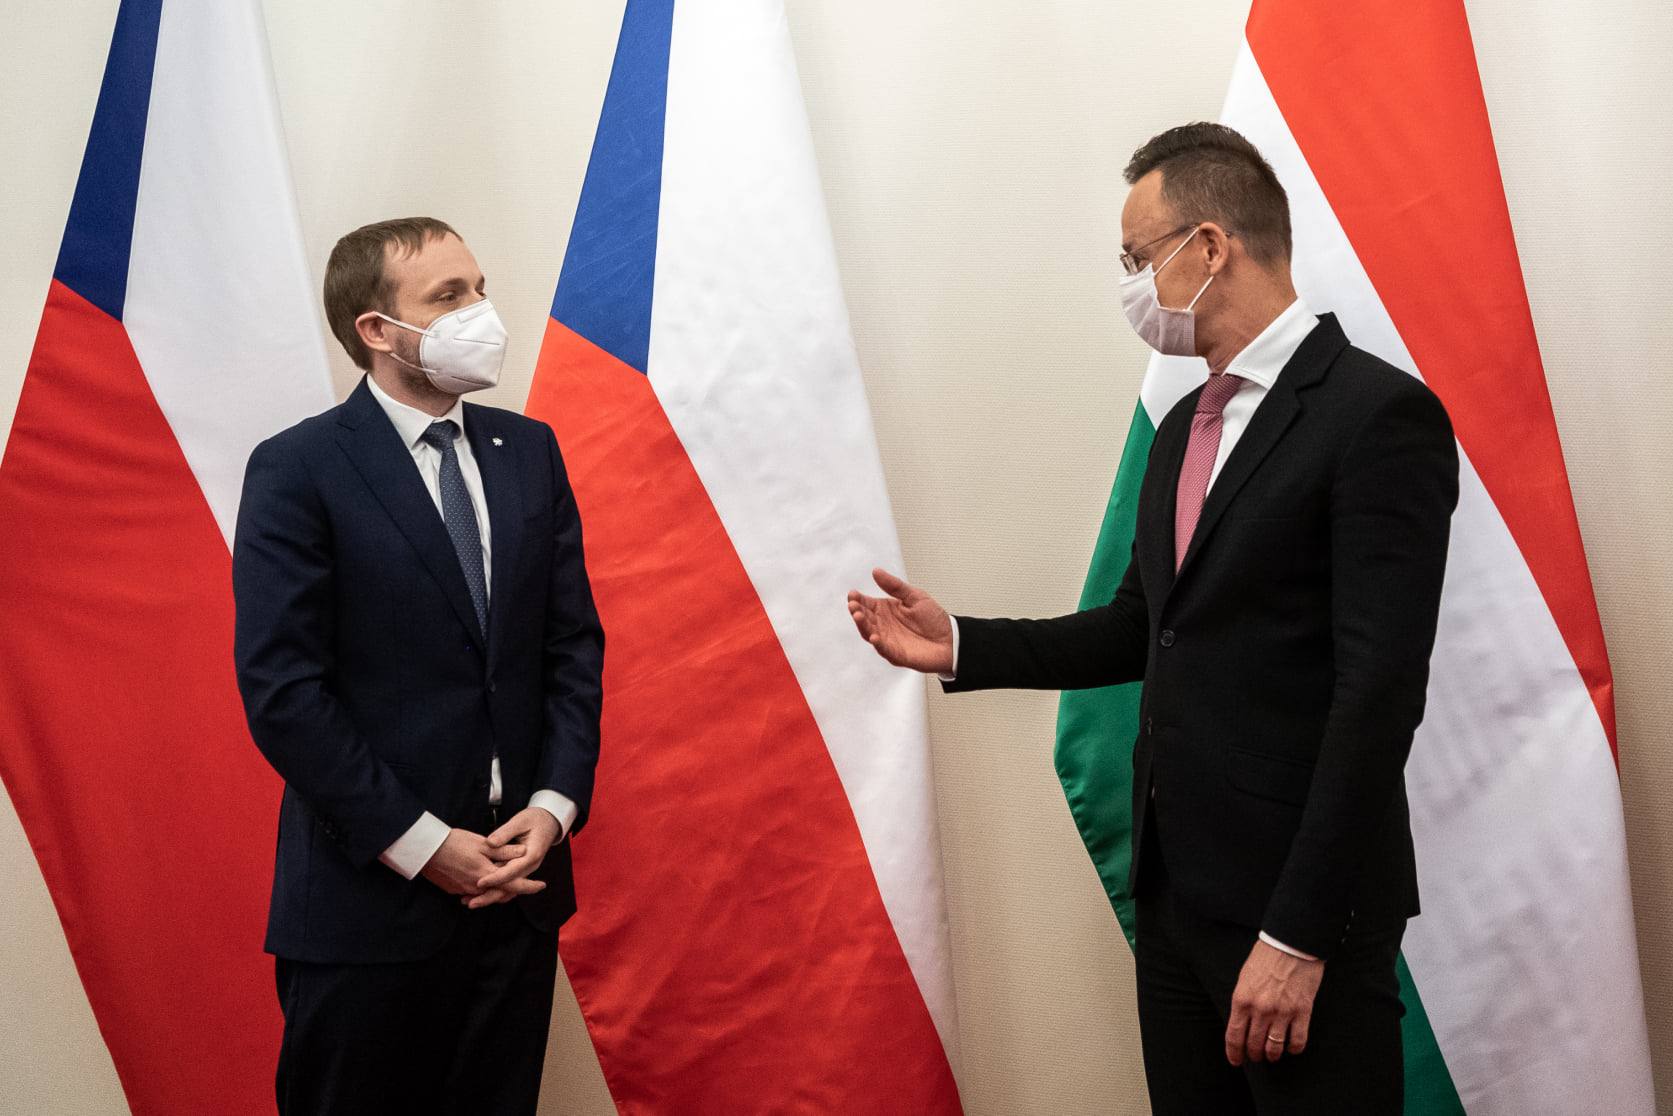 Ministros de Relaciones Exteriores húngaros checos